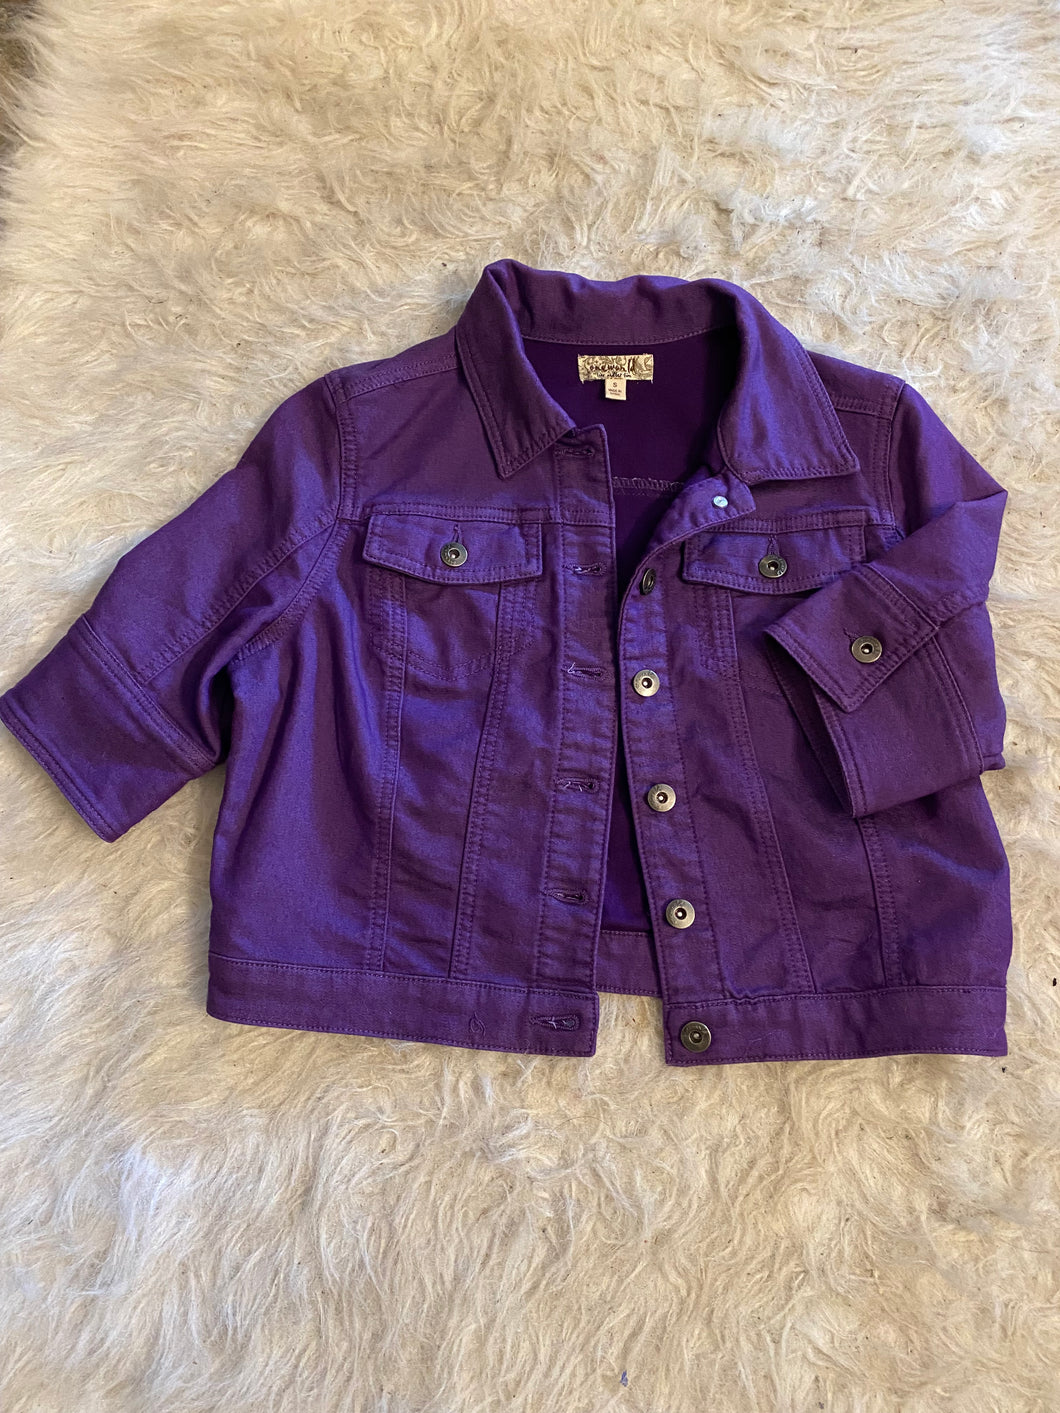 Purple Jean Jacket from Oneworld